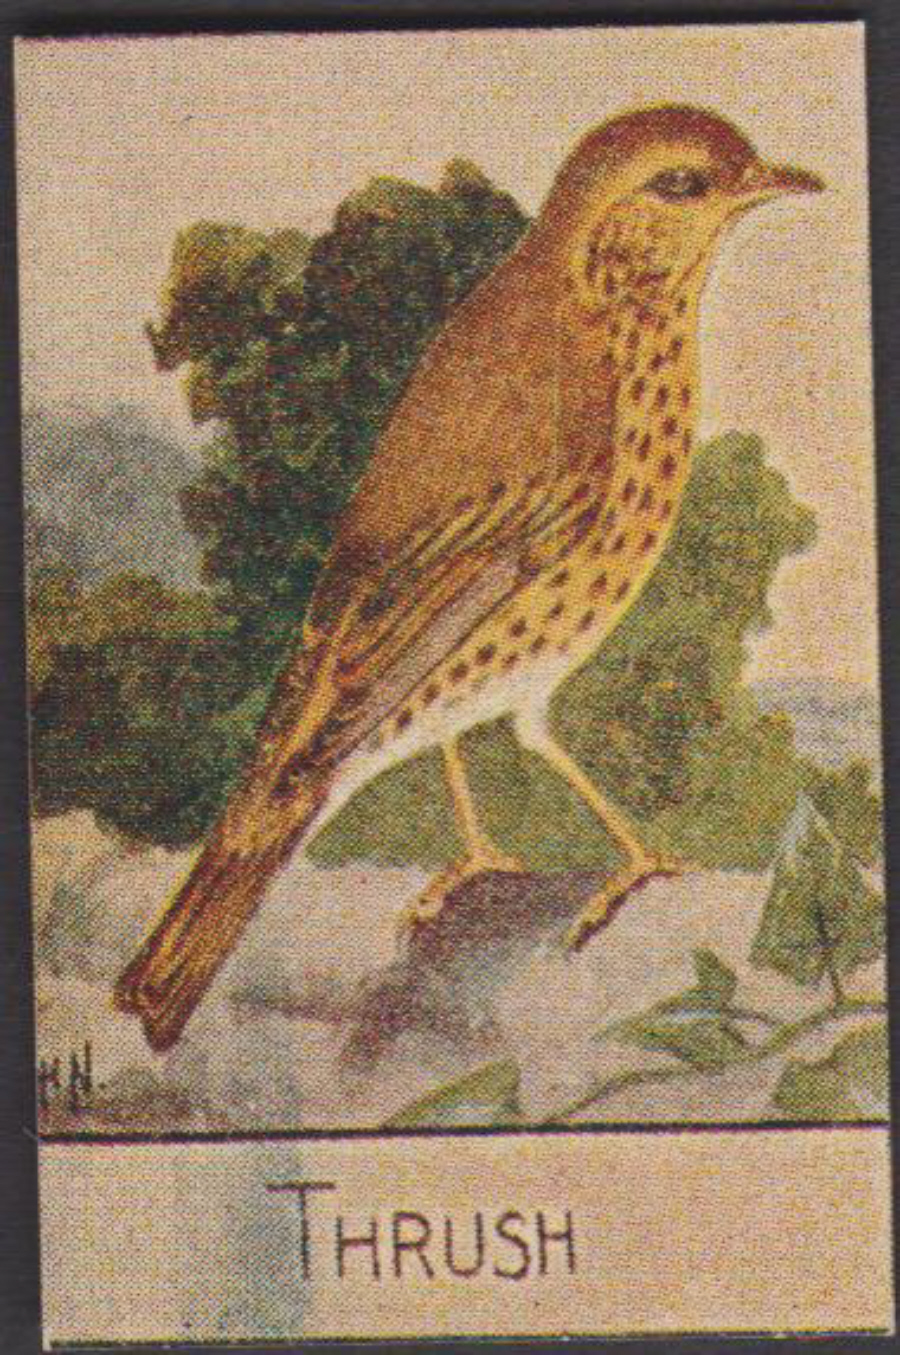 Spratt's British Bird Series Numbered No 61 Thrush